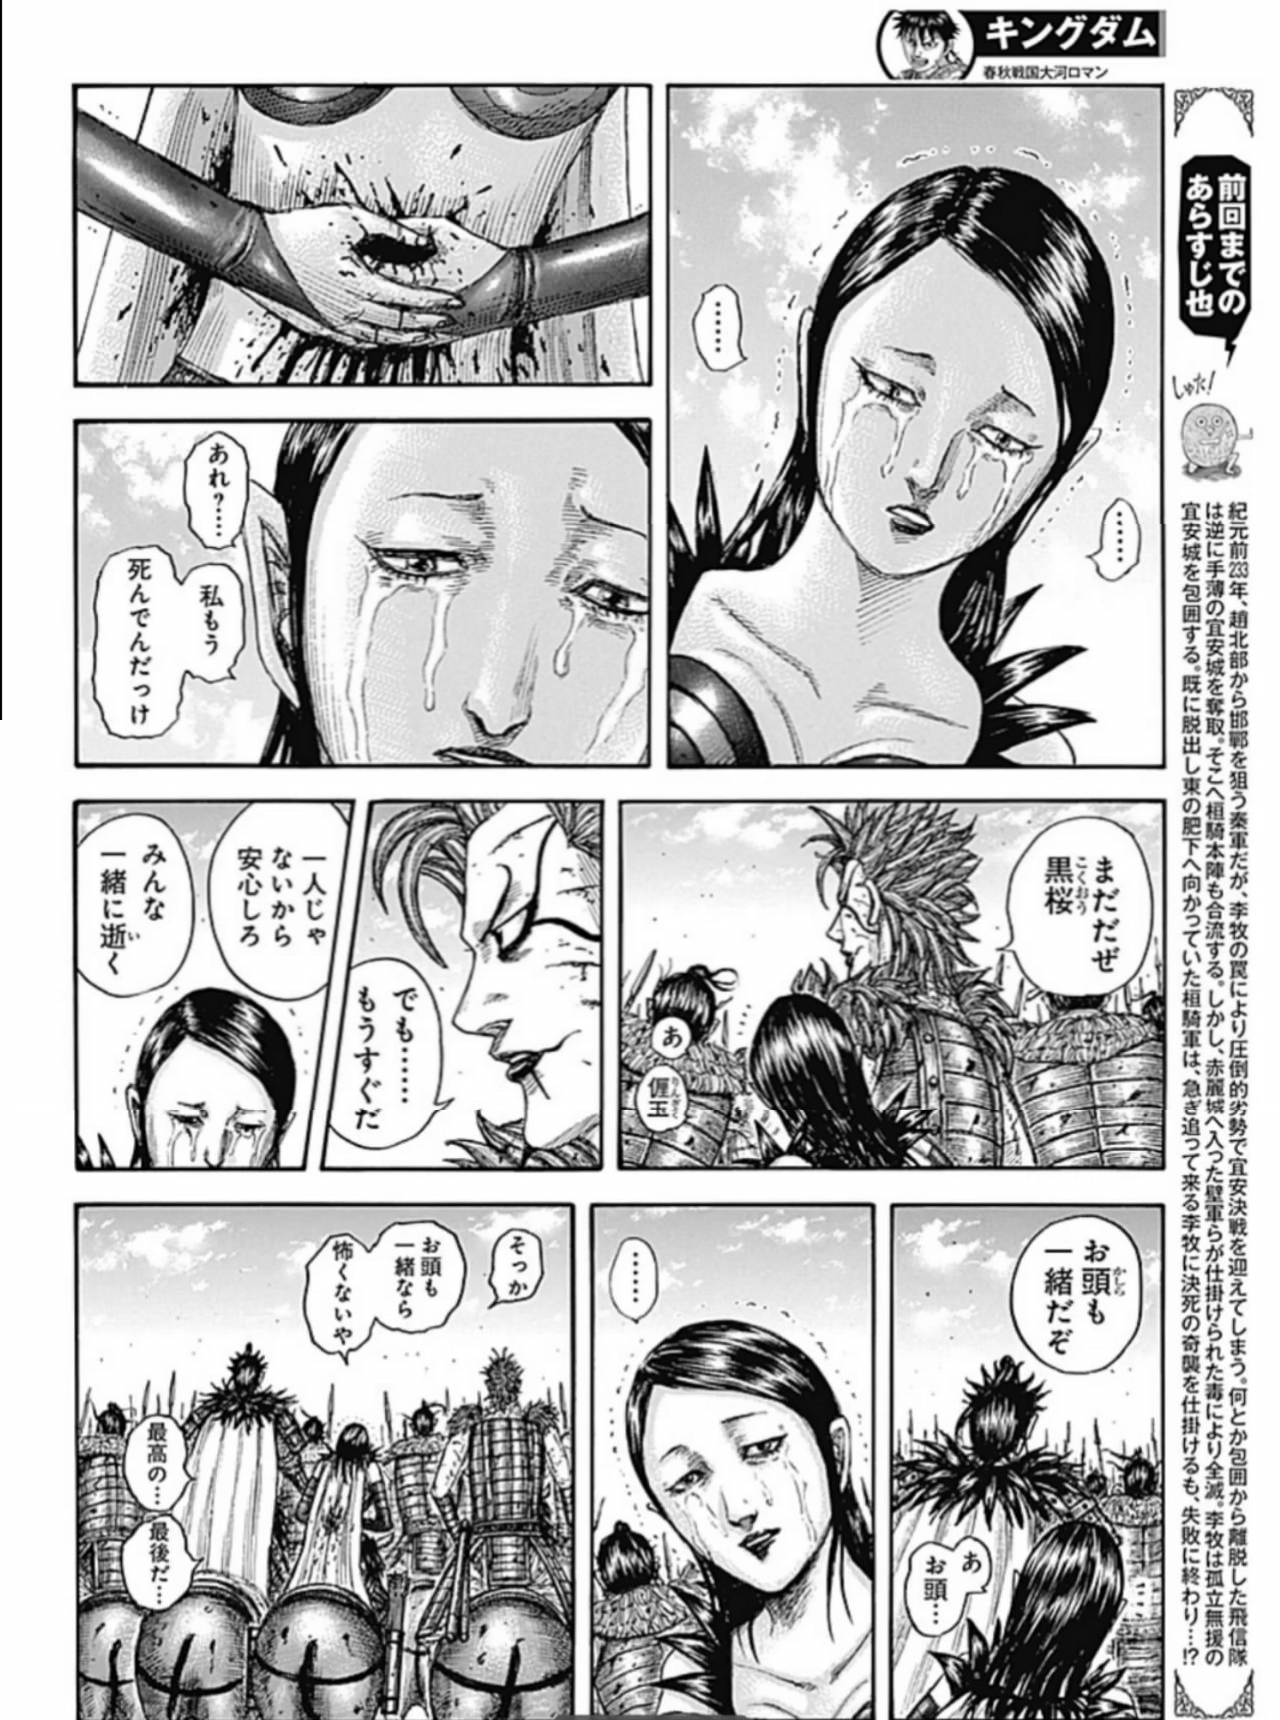 漫画 『キングダム』【第751話】 日本語 RAW - manga Kingdom Chapter 